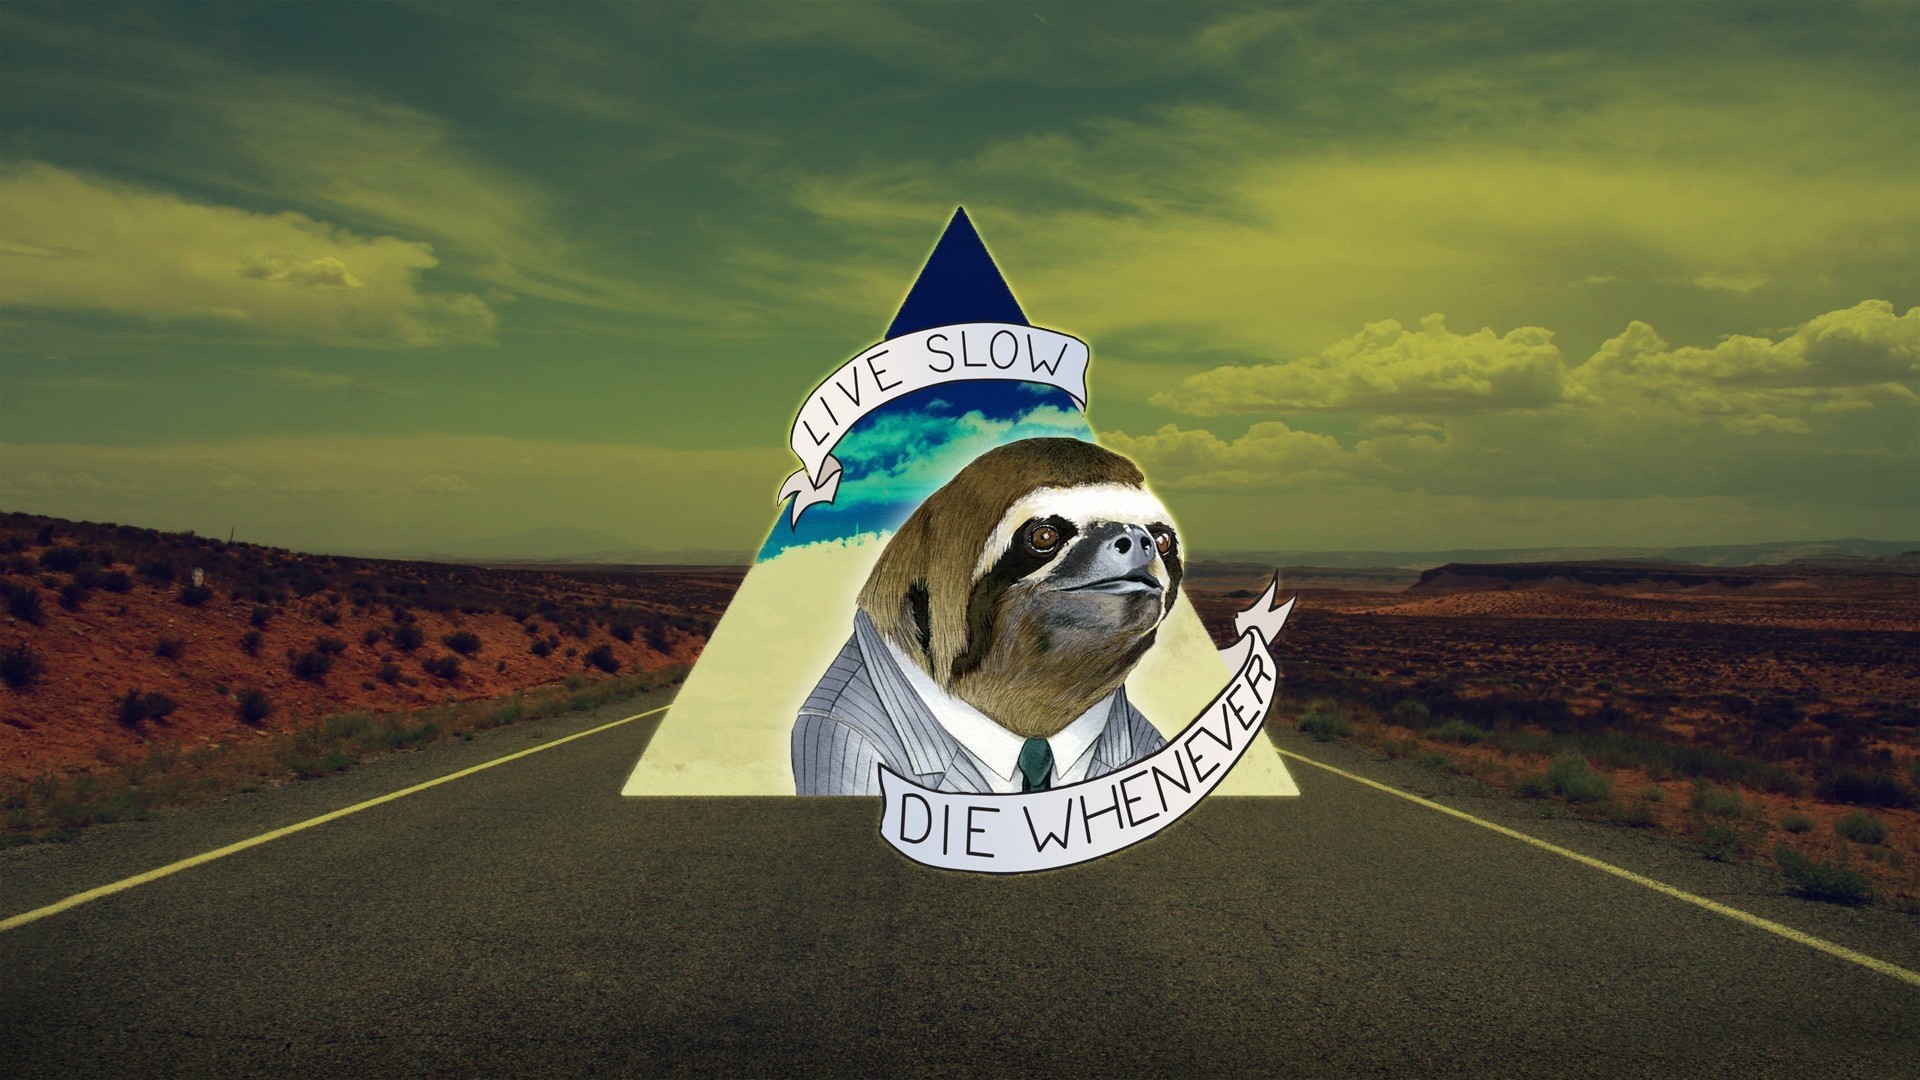 death, humor, life, road, sloth